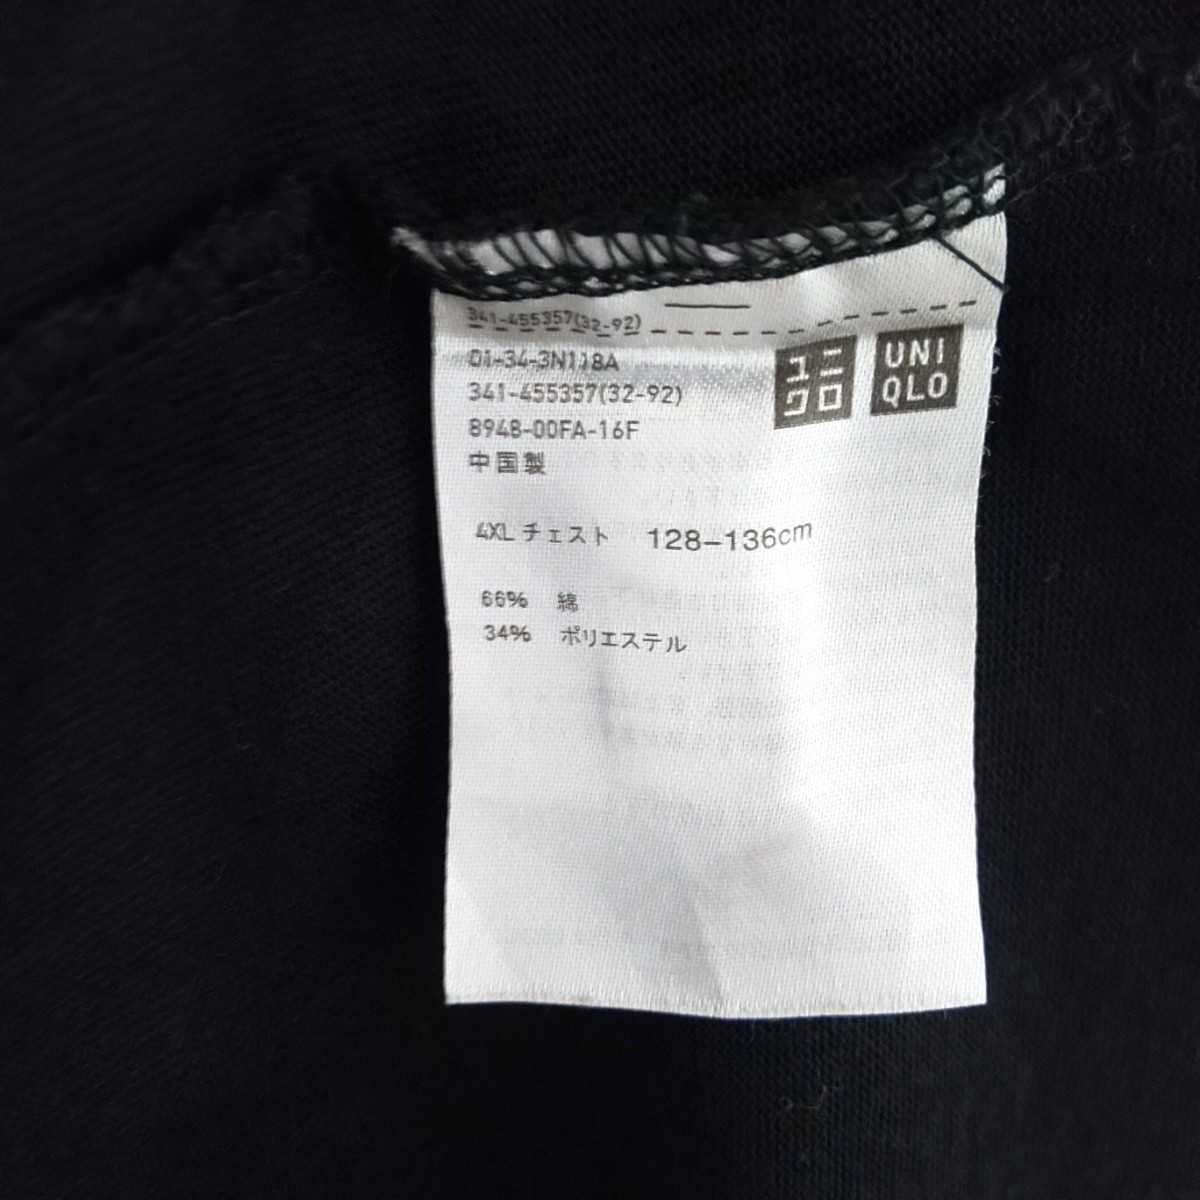 UNIQLO 4XL 半袖 Tシャツ 5L 大きいサイズ トップス 黒 ユニクロ 無地Tシャツ ブラック _画像8